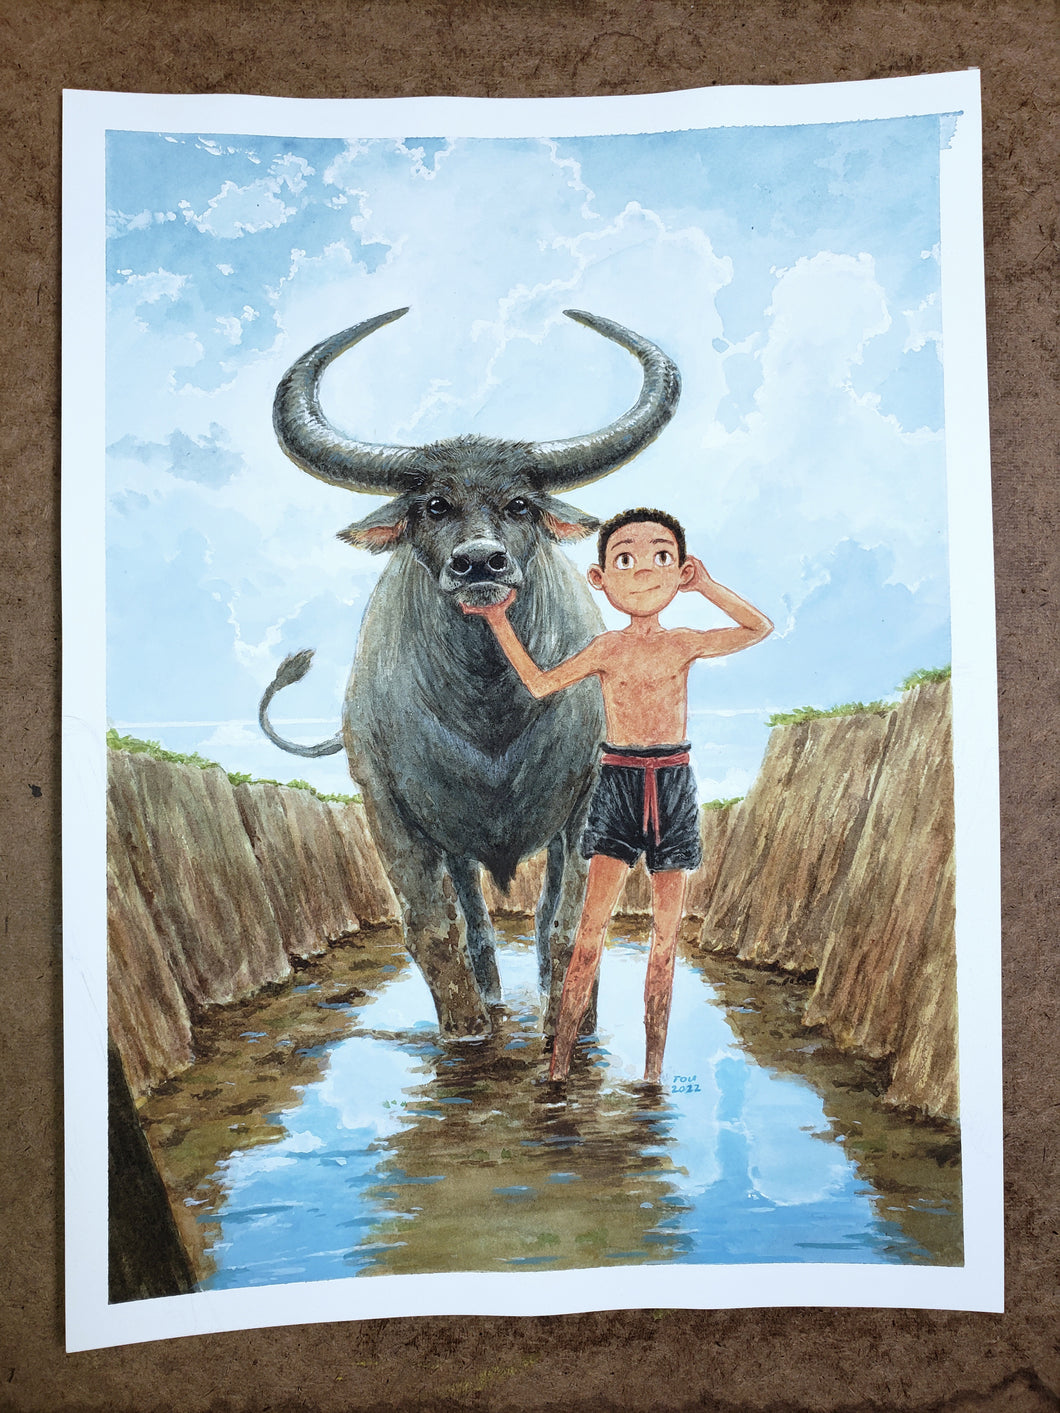 Hmong boy with water buffalo